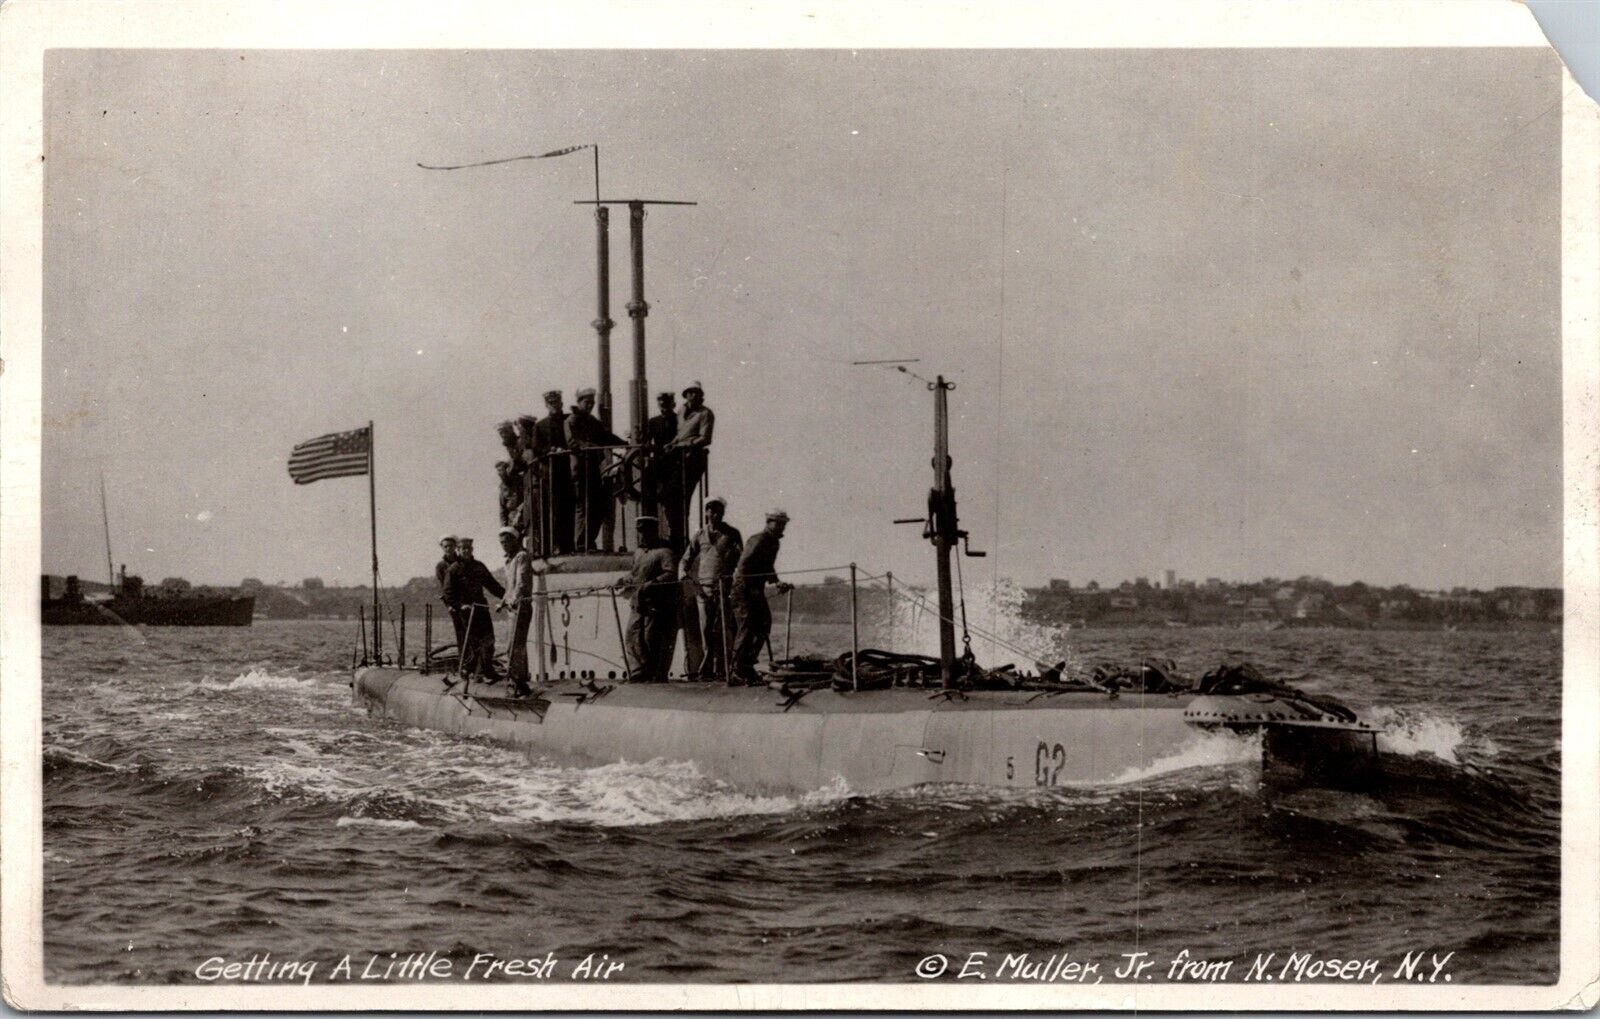 Vtg Crew Getting A Little Fresh Air USS G-2 Submarine SS-27 Navy RPPC Postcard